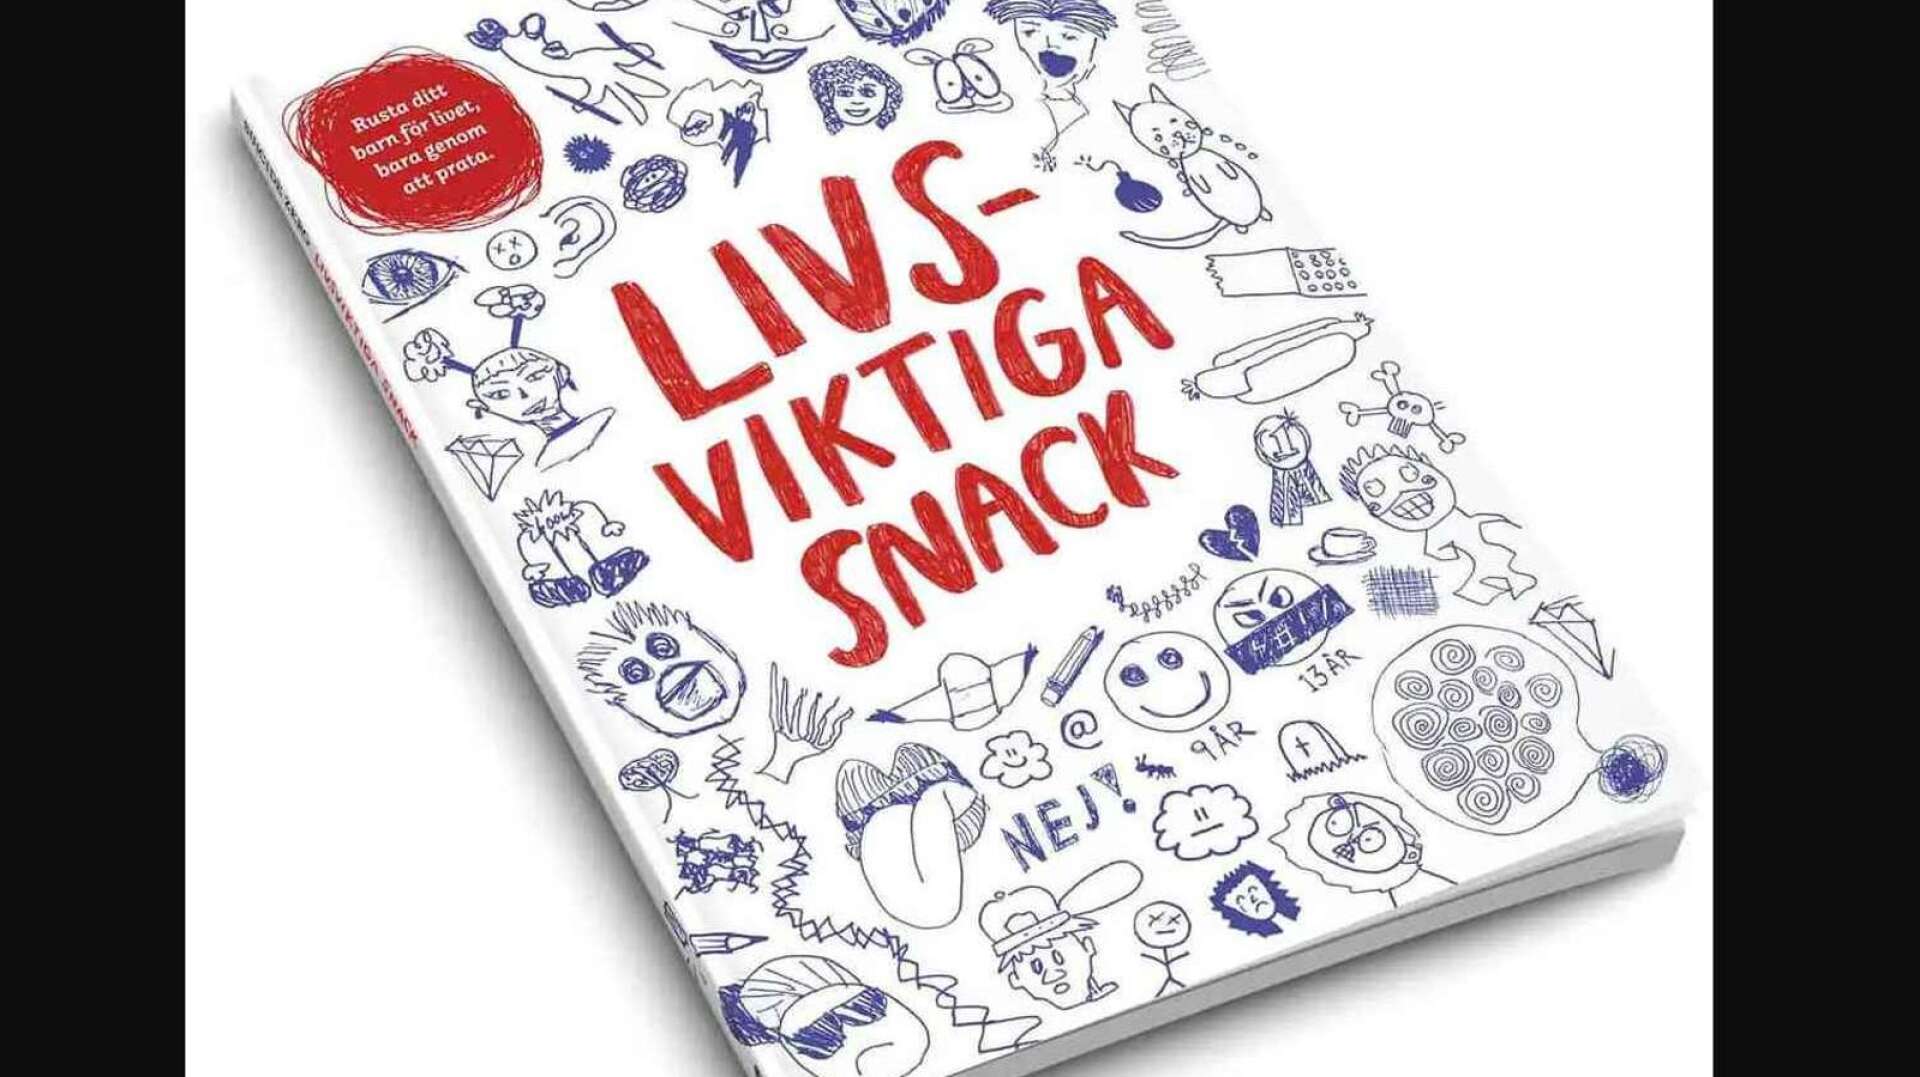 Boken ”Livsviktiga snack” som i dagarna sänds till alla föräldrar i Västra Götaland som har en nioåring.